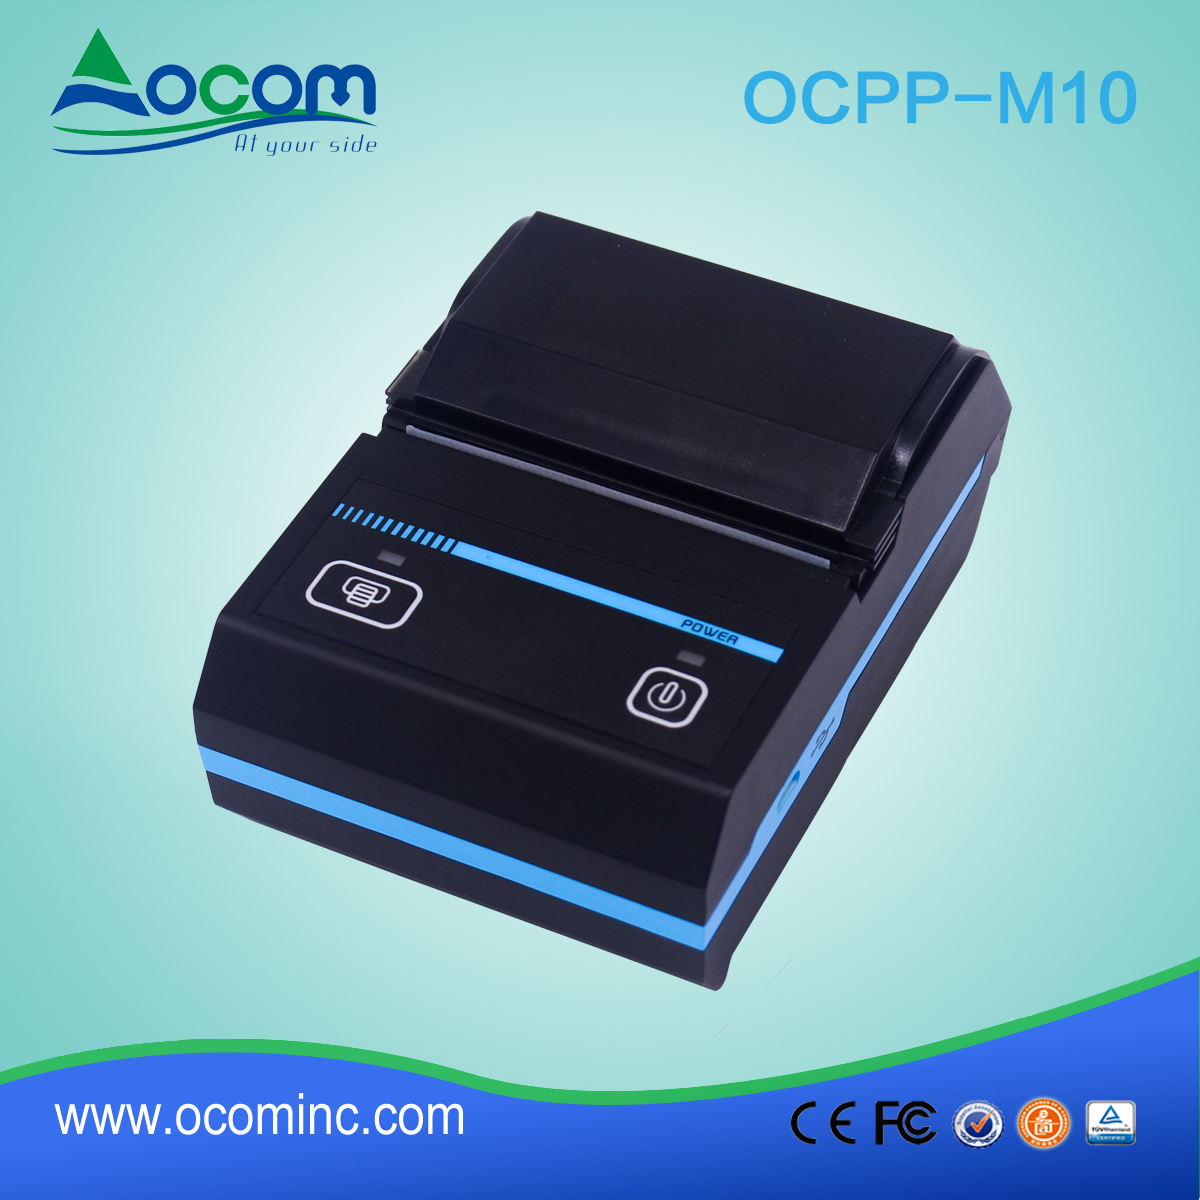 OCPP-M10 58毫米便携式迷你热敏蓝牙打印机